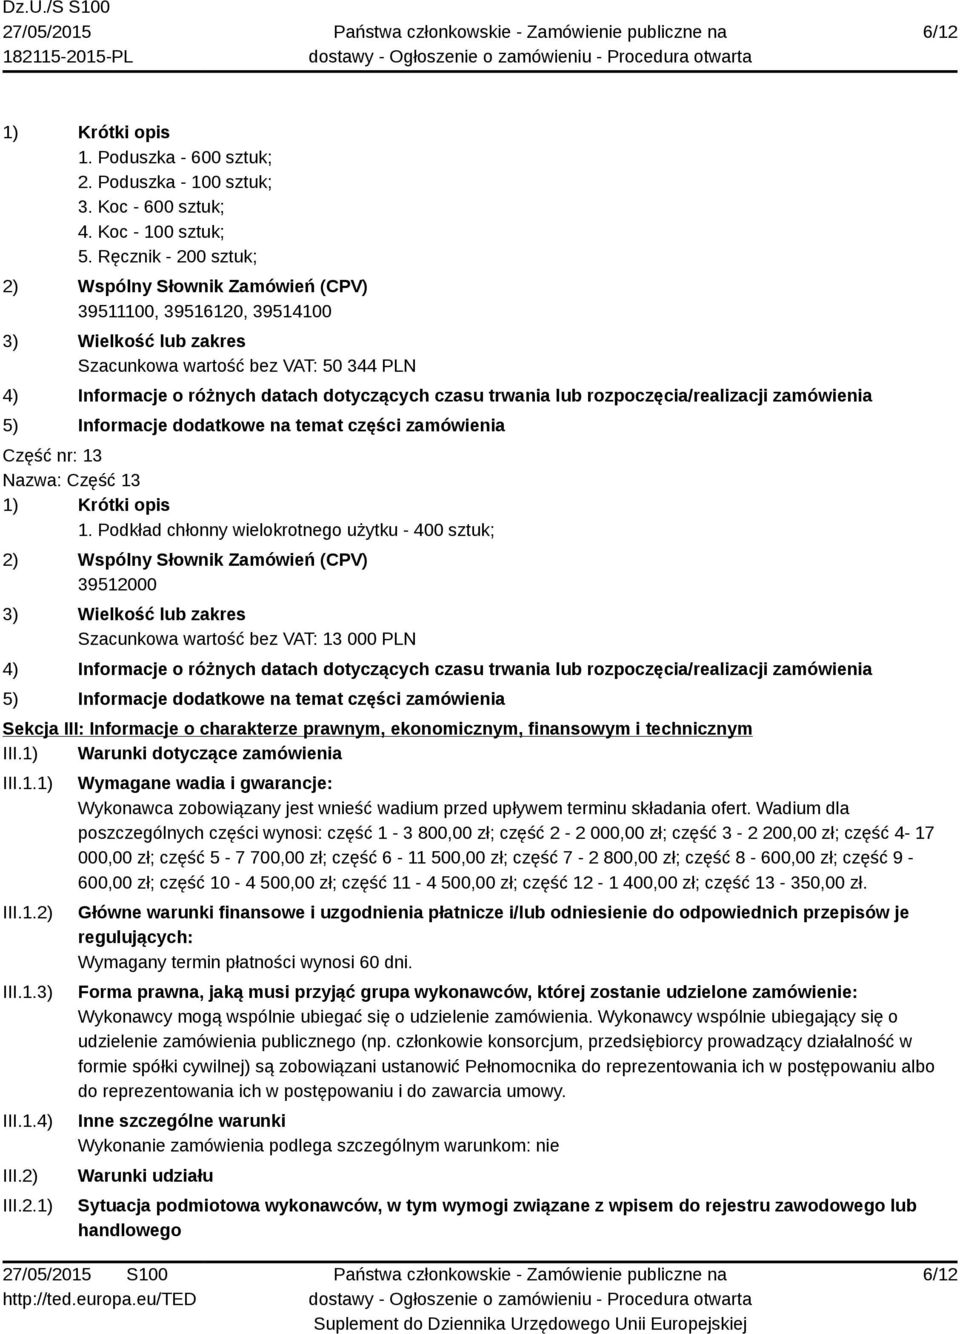 Podkład chłonny wielokrotnego użytku - 400 sztuk; 39512000 Szacunkowa wartość bez VAT: 13 000 PLN Sekcja III: Informacje o charakterze prawnym, ekonomicznym, finansowym i technicznym III.